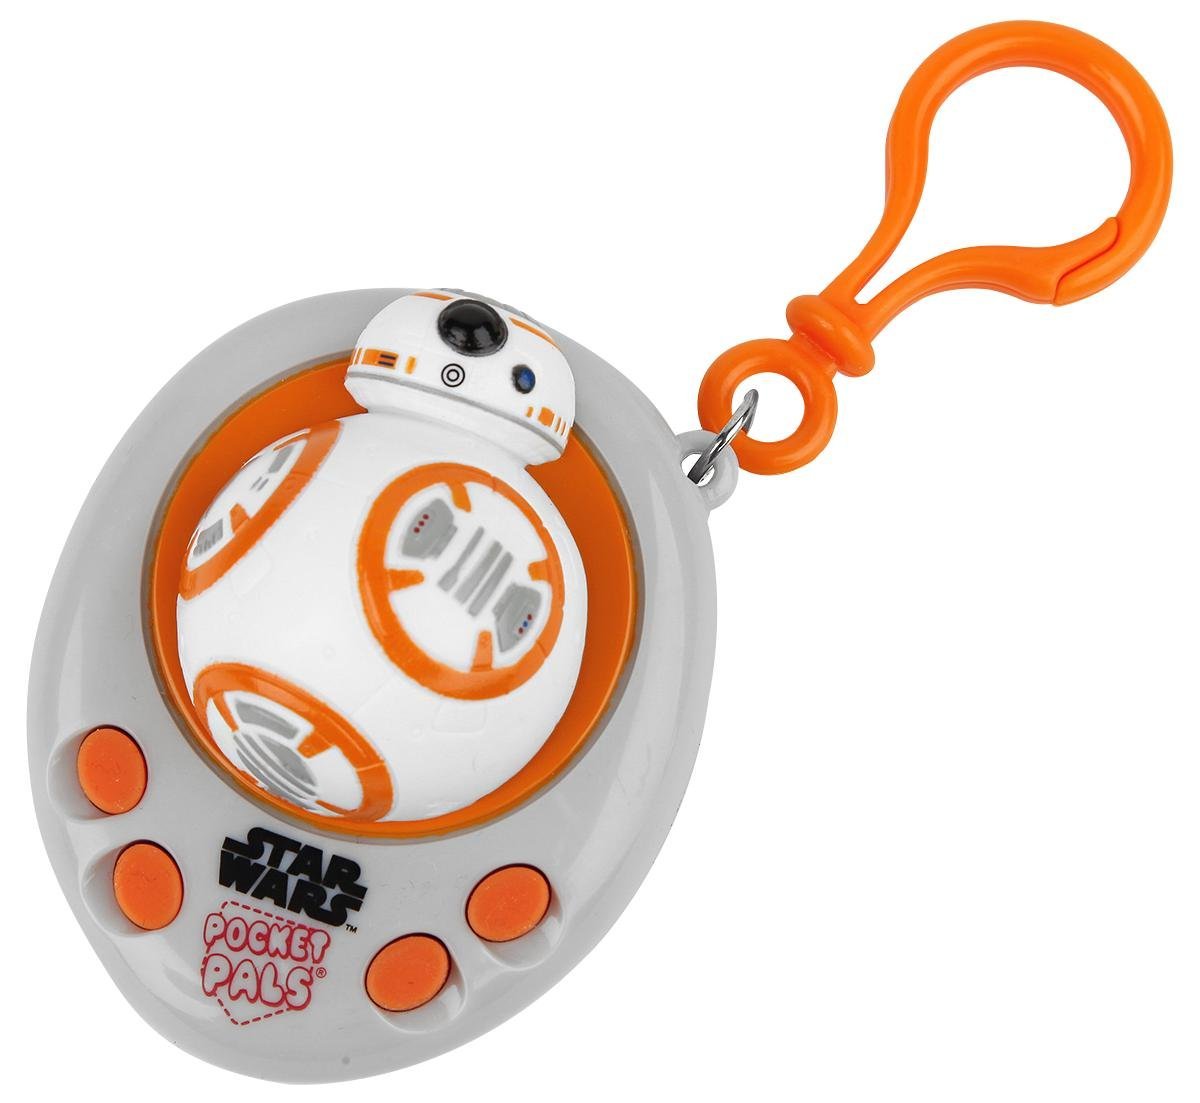 Star Wars BB-8 Talking Pocket Pal